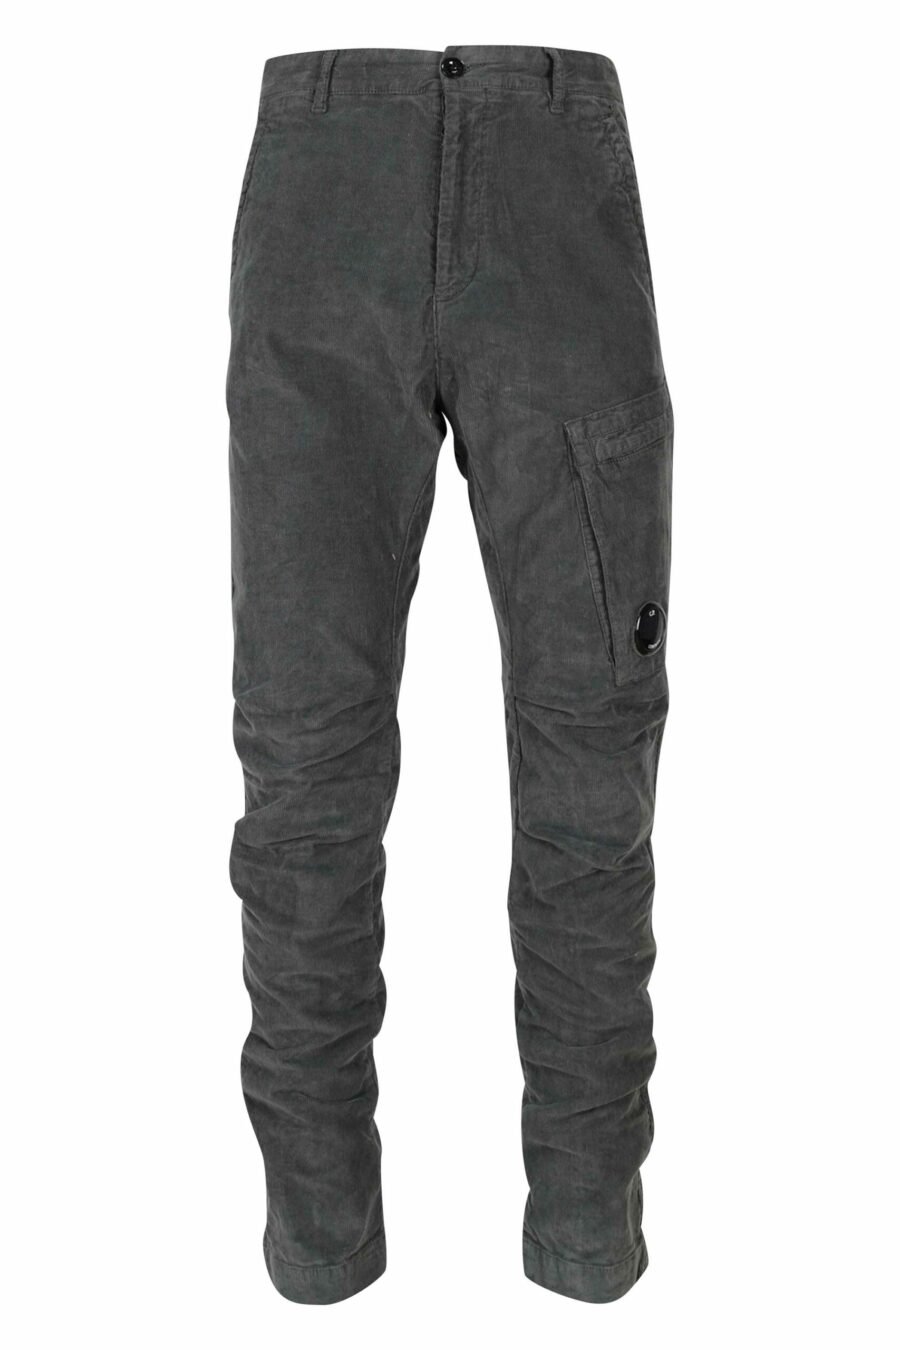 Pantalon gris en velours côtelé avec poche latérale et logo de l'objectif - 7620943650693 8 1 scaled